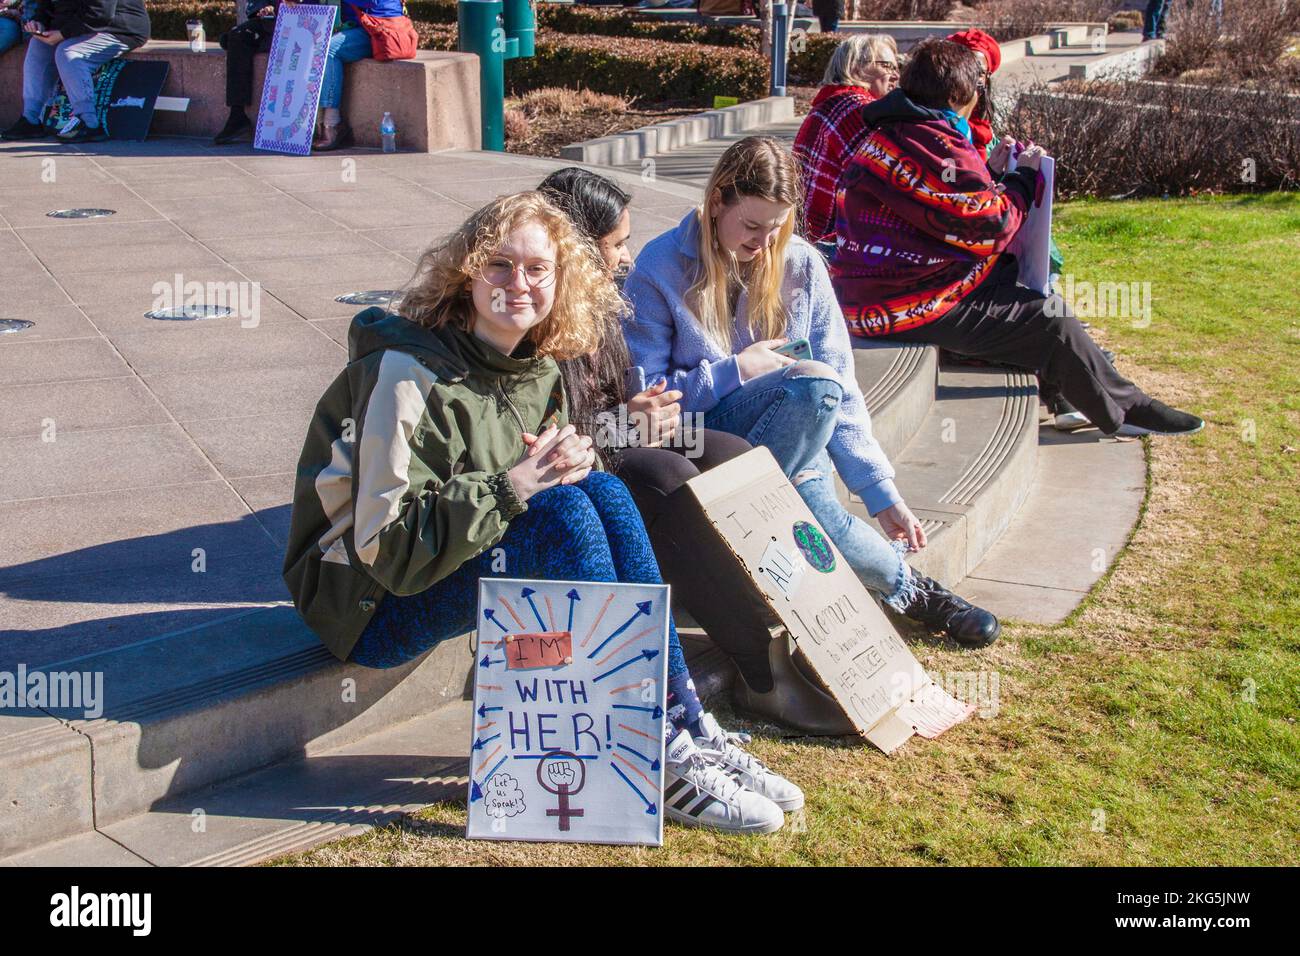 1-18-2020 Tulsa USA des jeunes femmes s'assoient à la marche des femmes avec des signes - une fille sourit à la caméra - signe - Je suis avec elle - parlons Banque D'Images